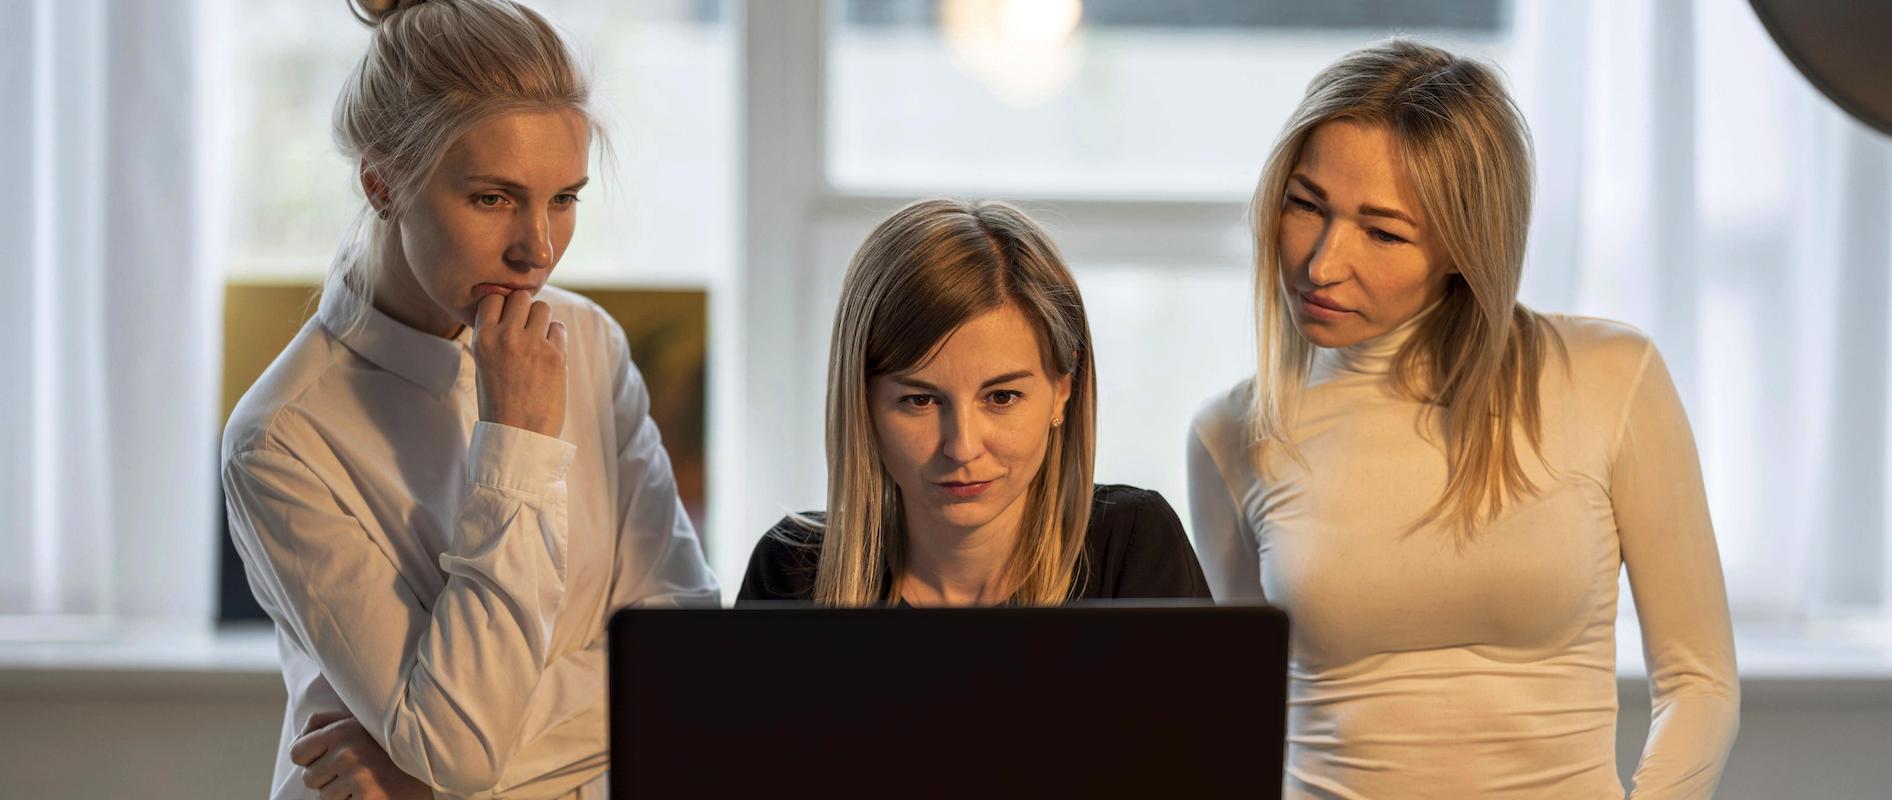 Drei Frauen stehen zusammen vor einem Computer